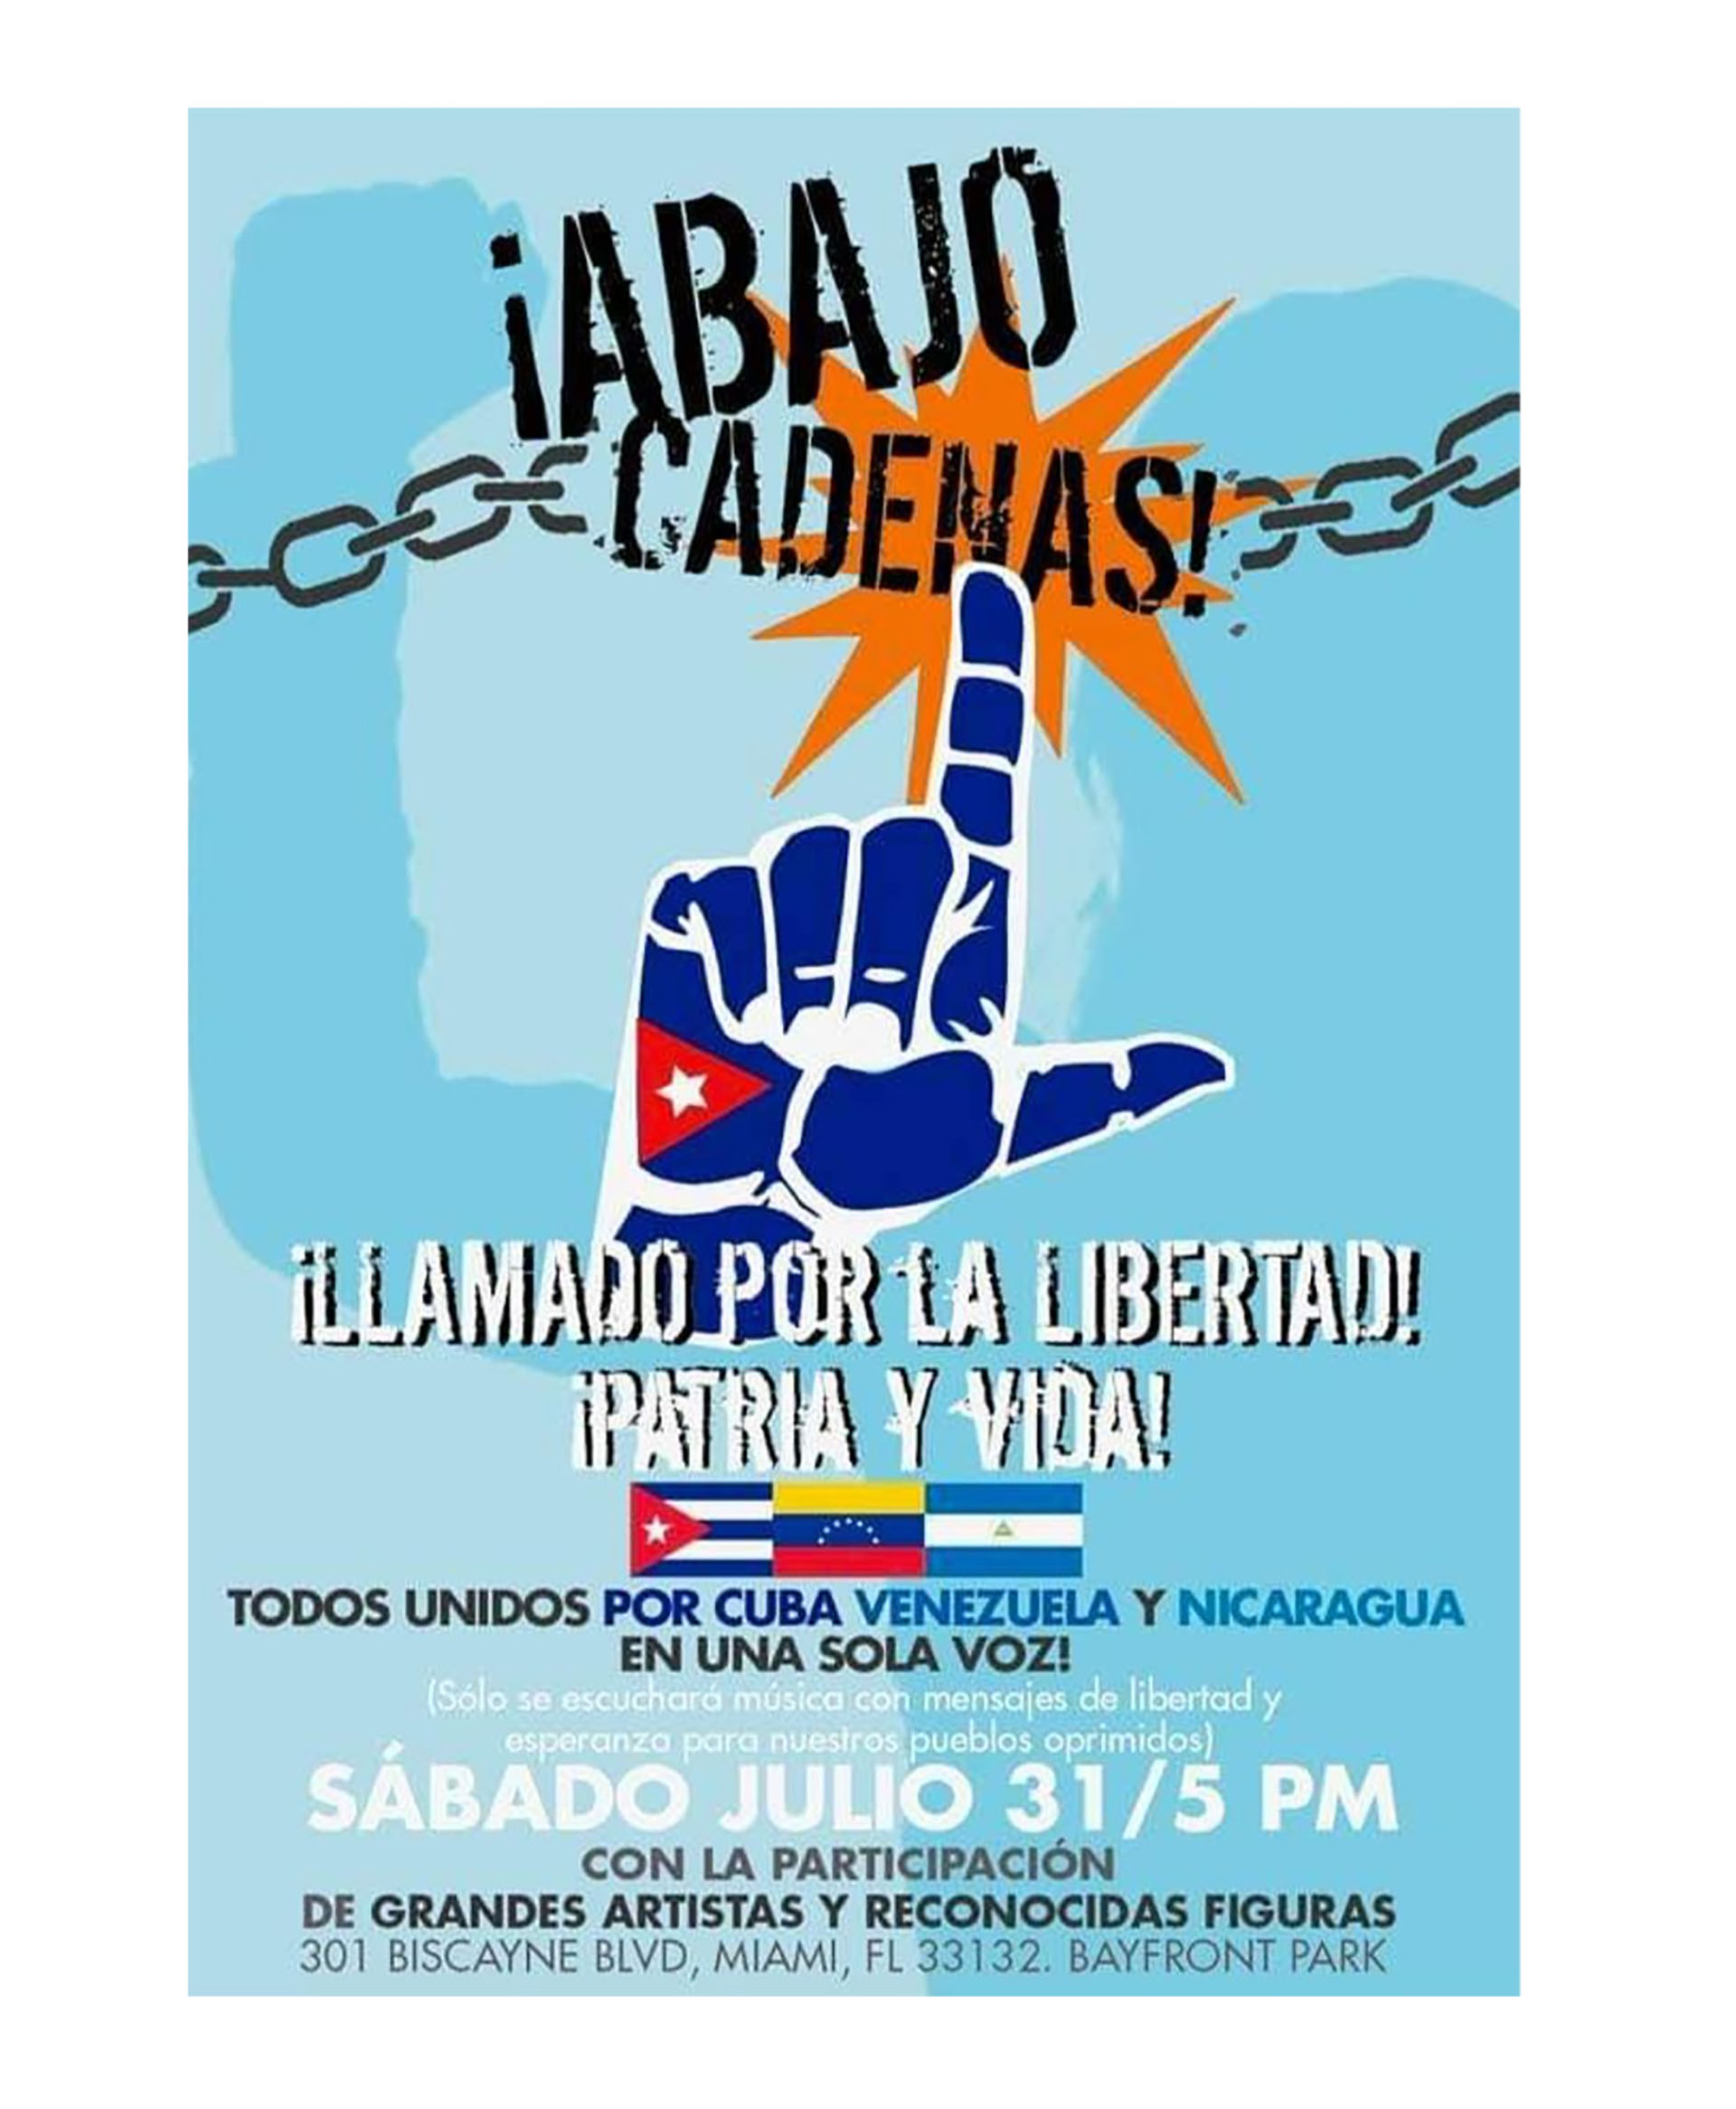 El objetivo de la marcha es exigir "la libertad, todos unidos por Cuba, Nicaragua y Venezuela en una sola voz”,